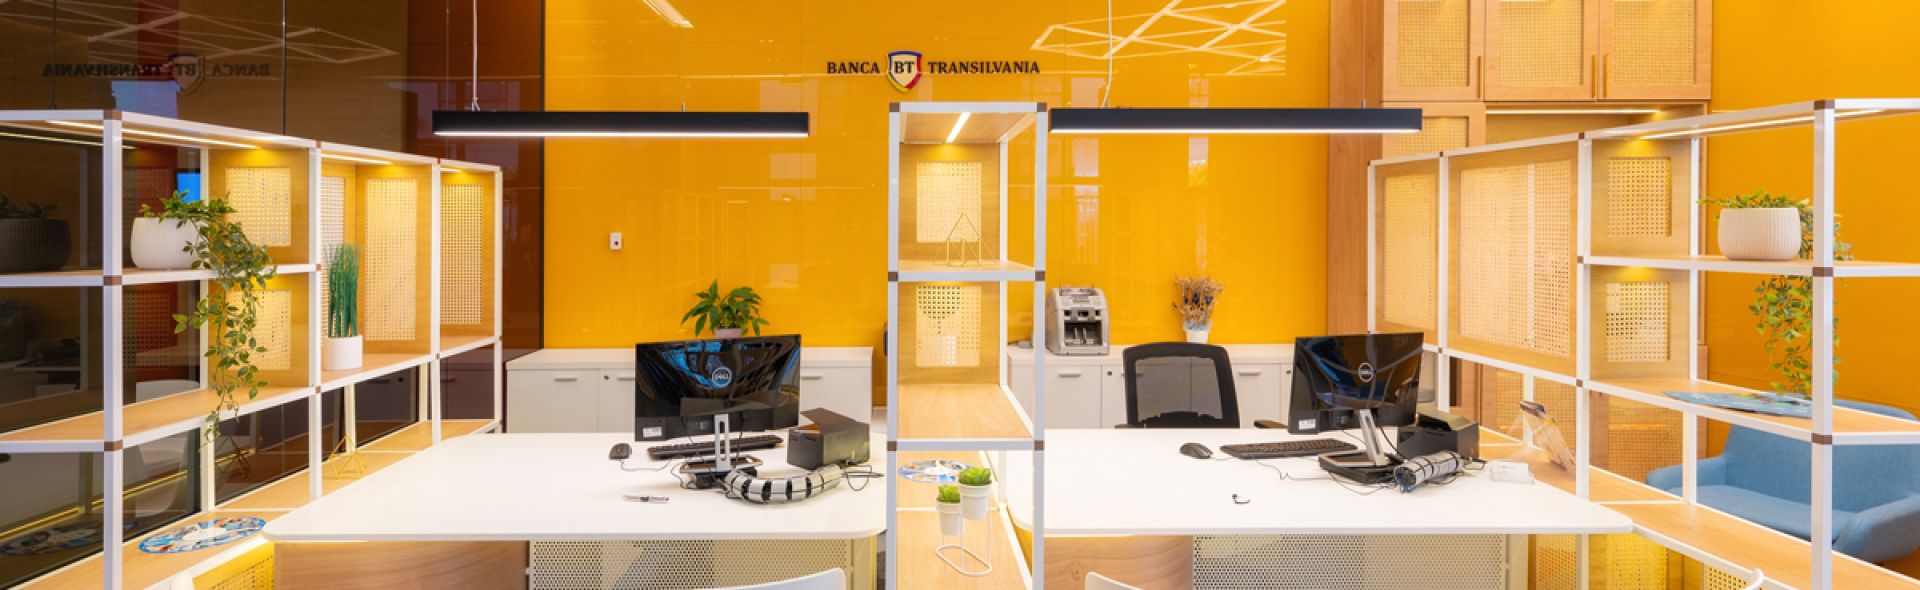 Banca Transilvania lansează conceptul Agenții BT Dialog